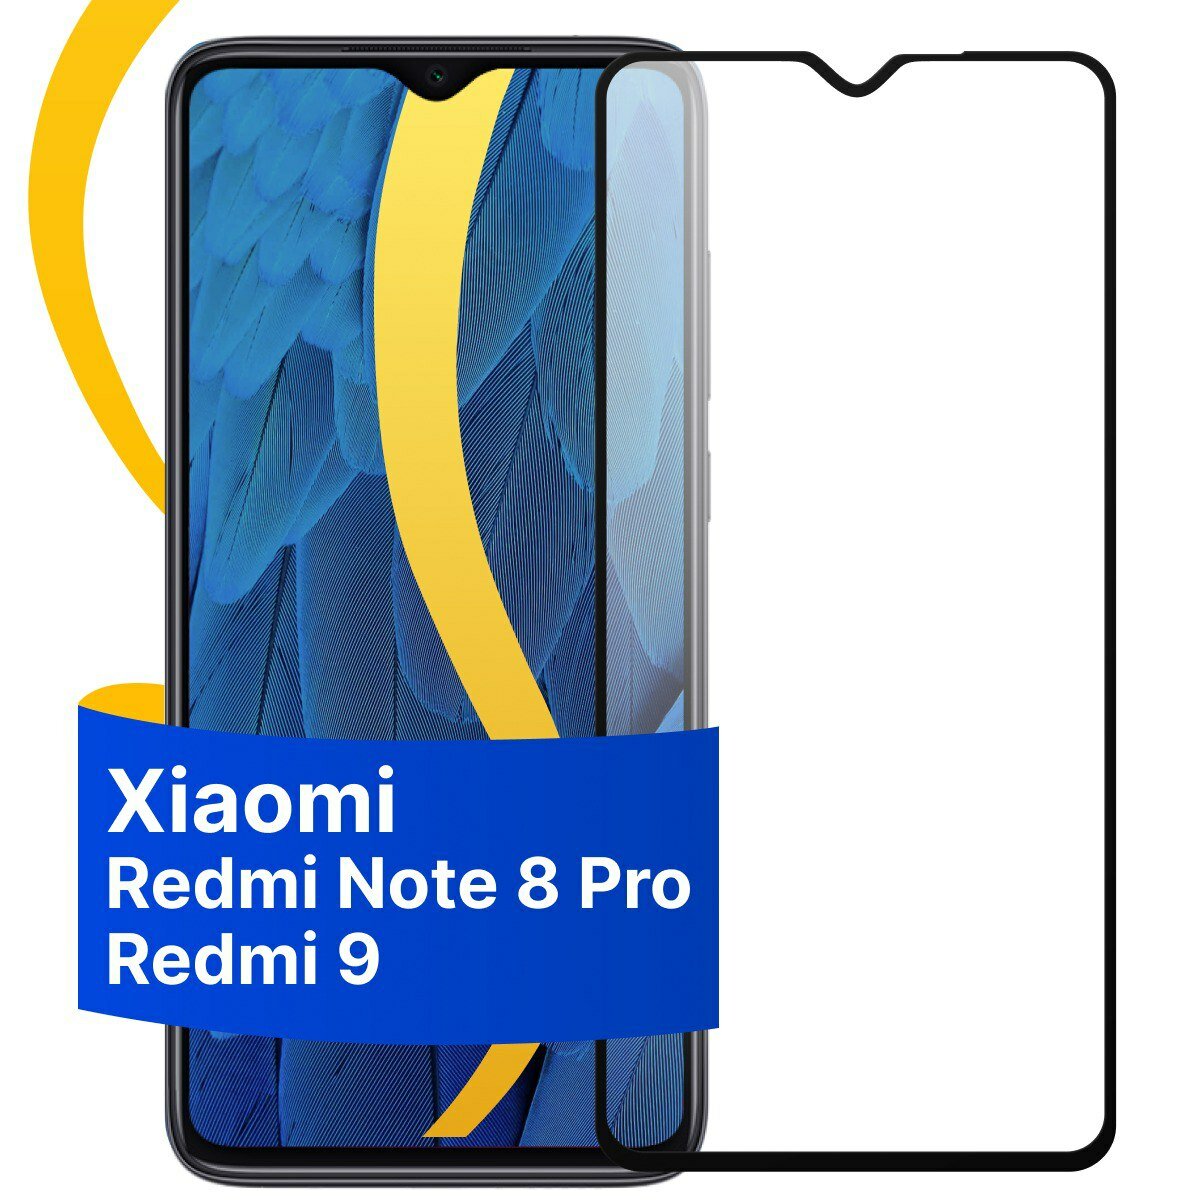 Глянцевое защитное стекло для Xiaomi Redmi Note 8 Pro и Redmi 9 / Противоударное стекло с олеофобным покрытием на телефон Сяоми Редми Нот 8 Про и Редми 9